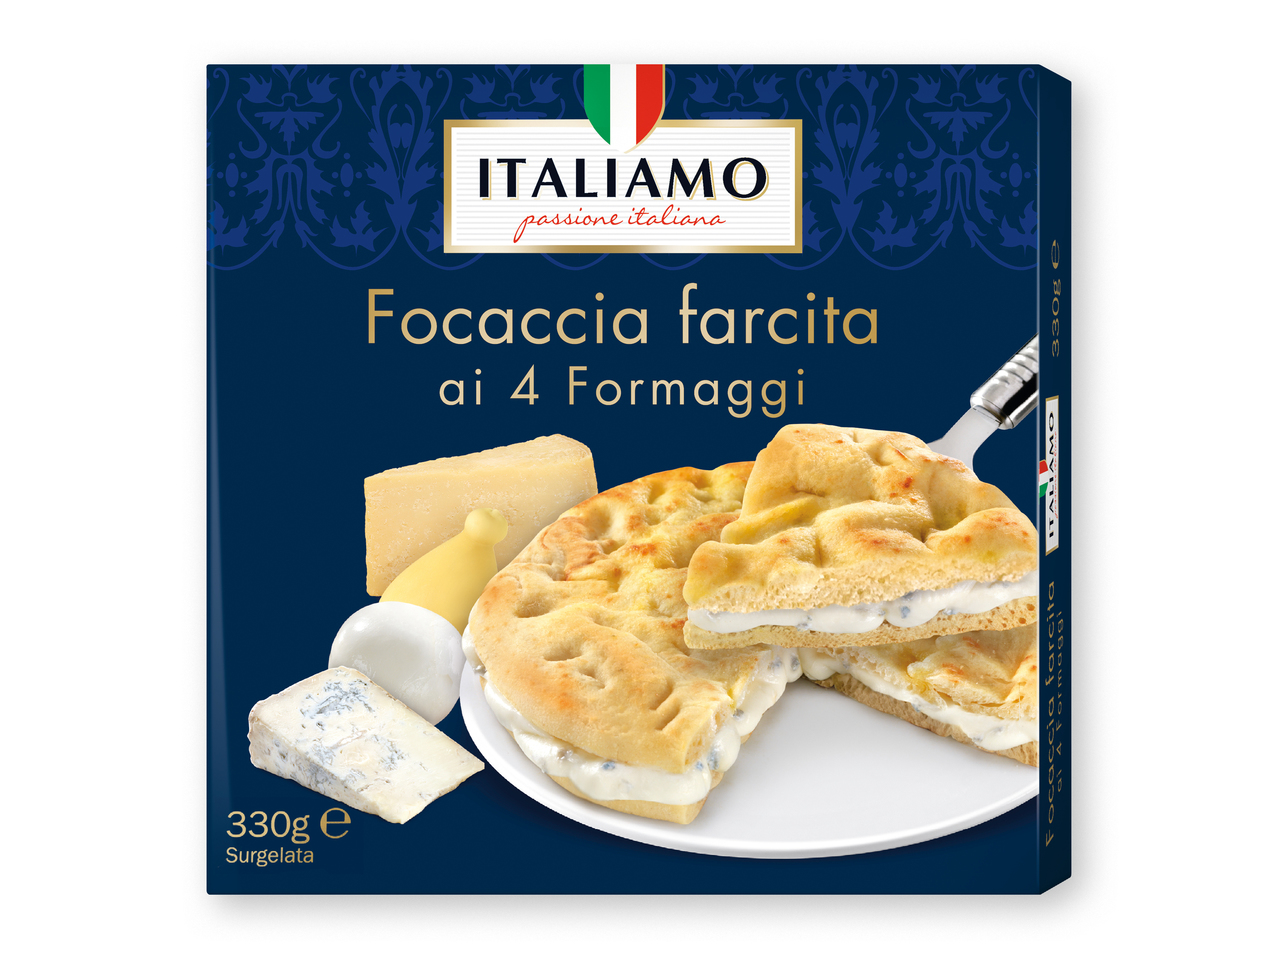 "ITALIAMO" Focaccia con relleno de queso